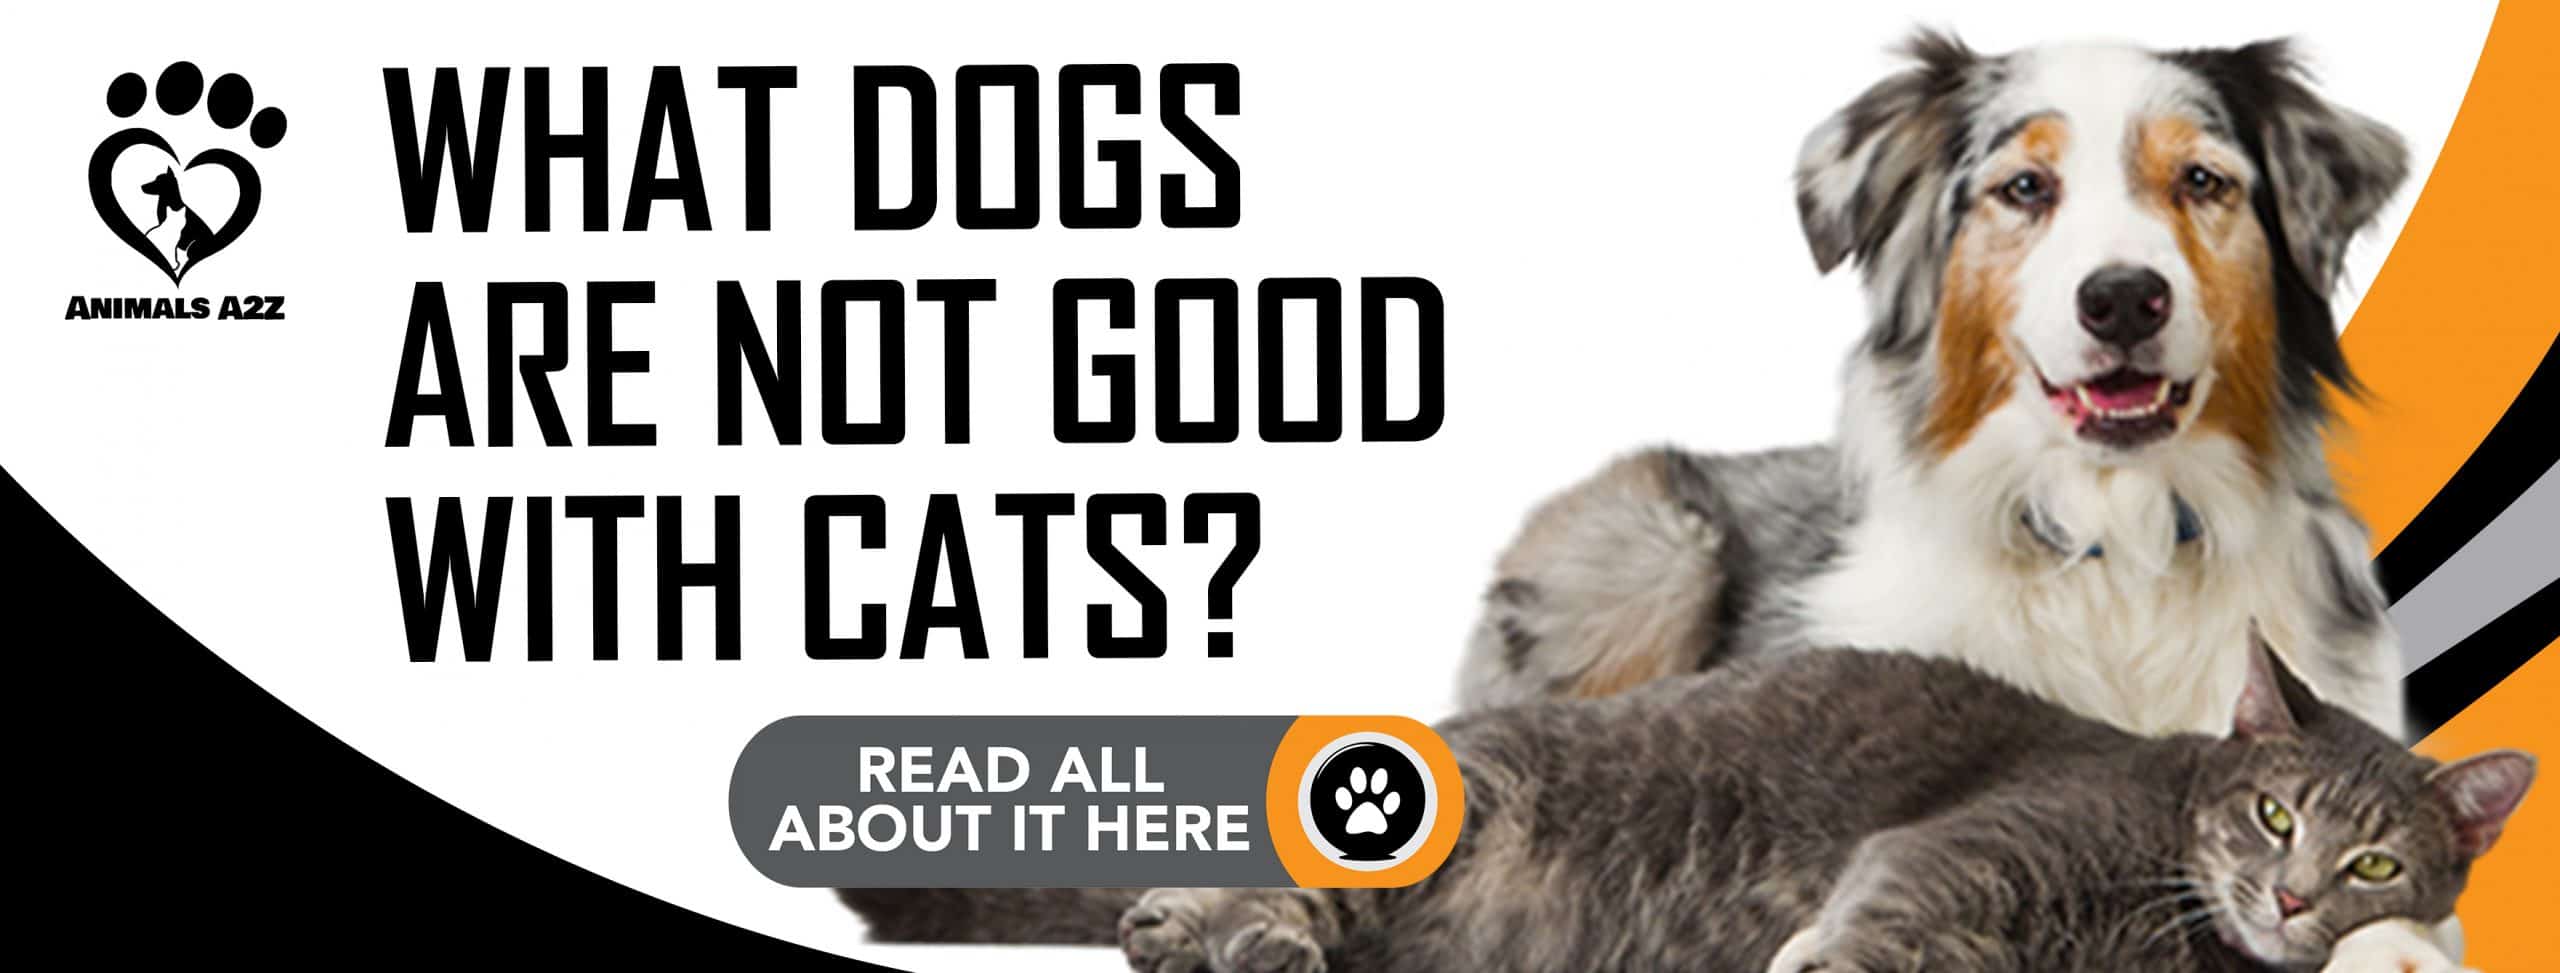 Welche Hunde vertragen sich nicht mit Katzen?